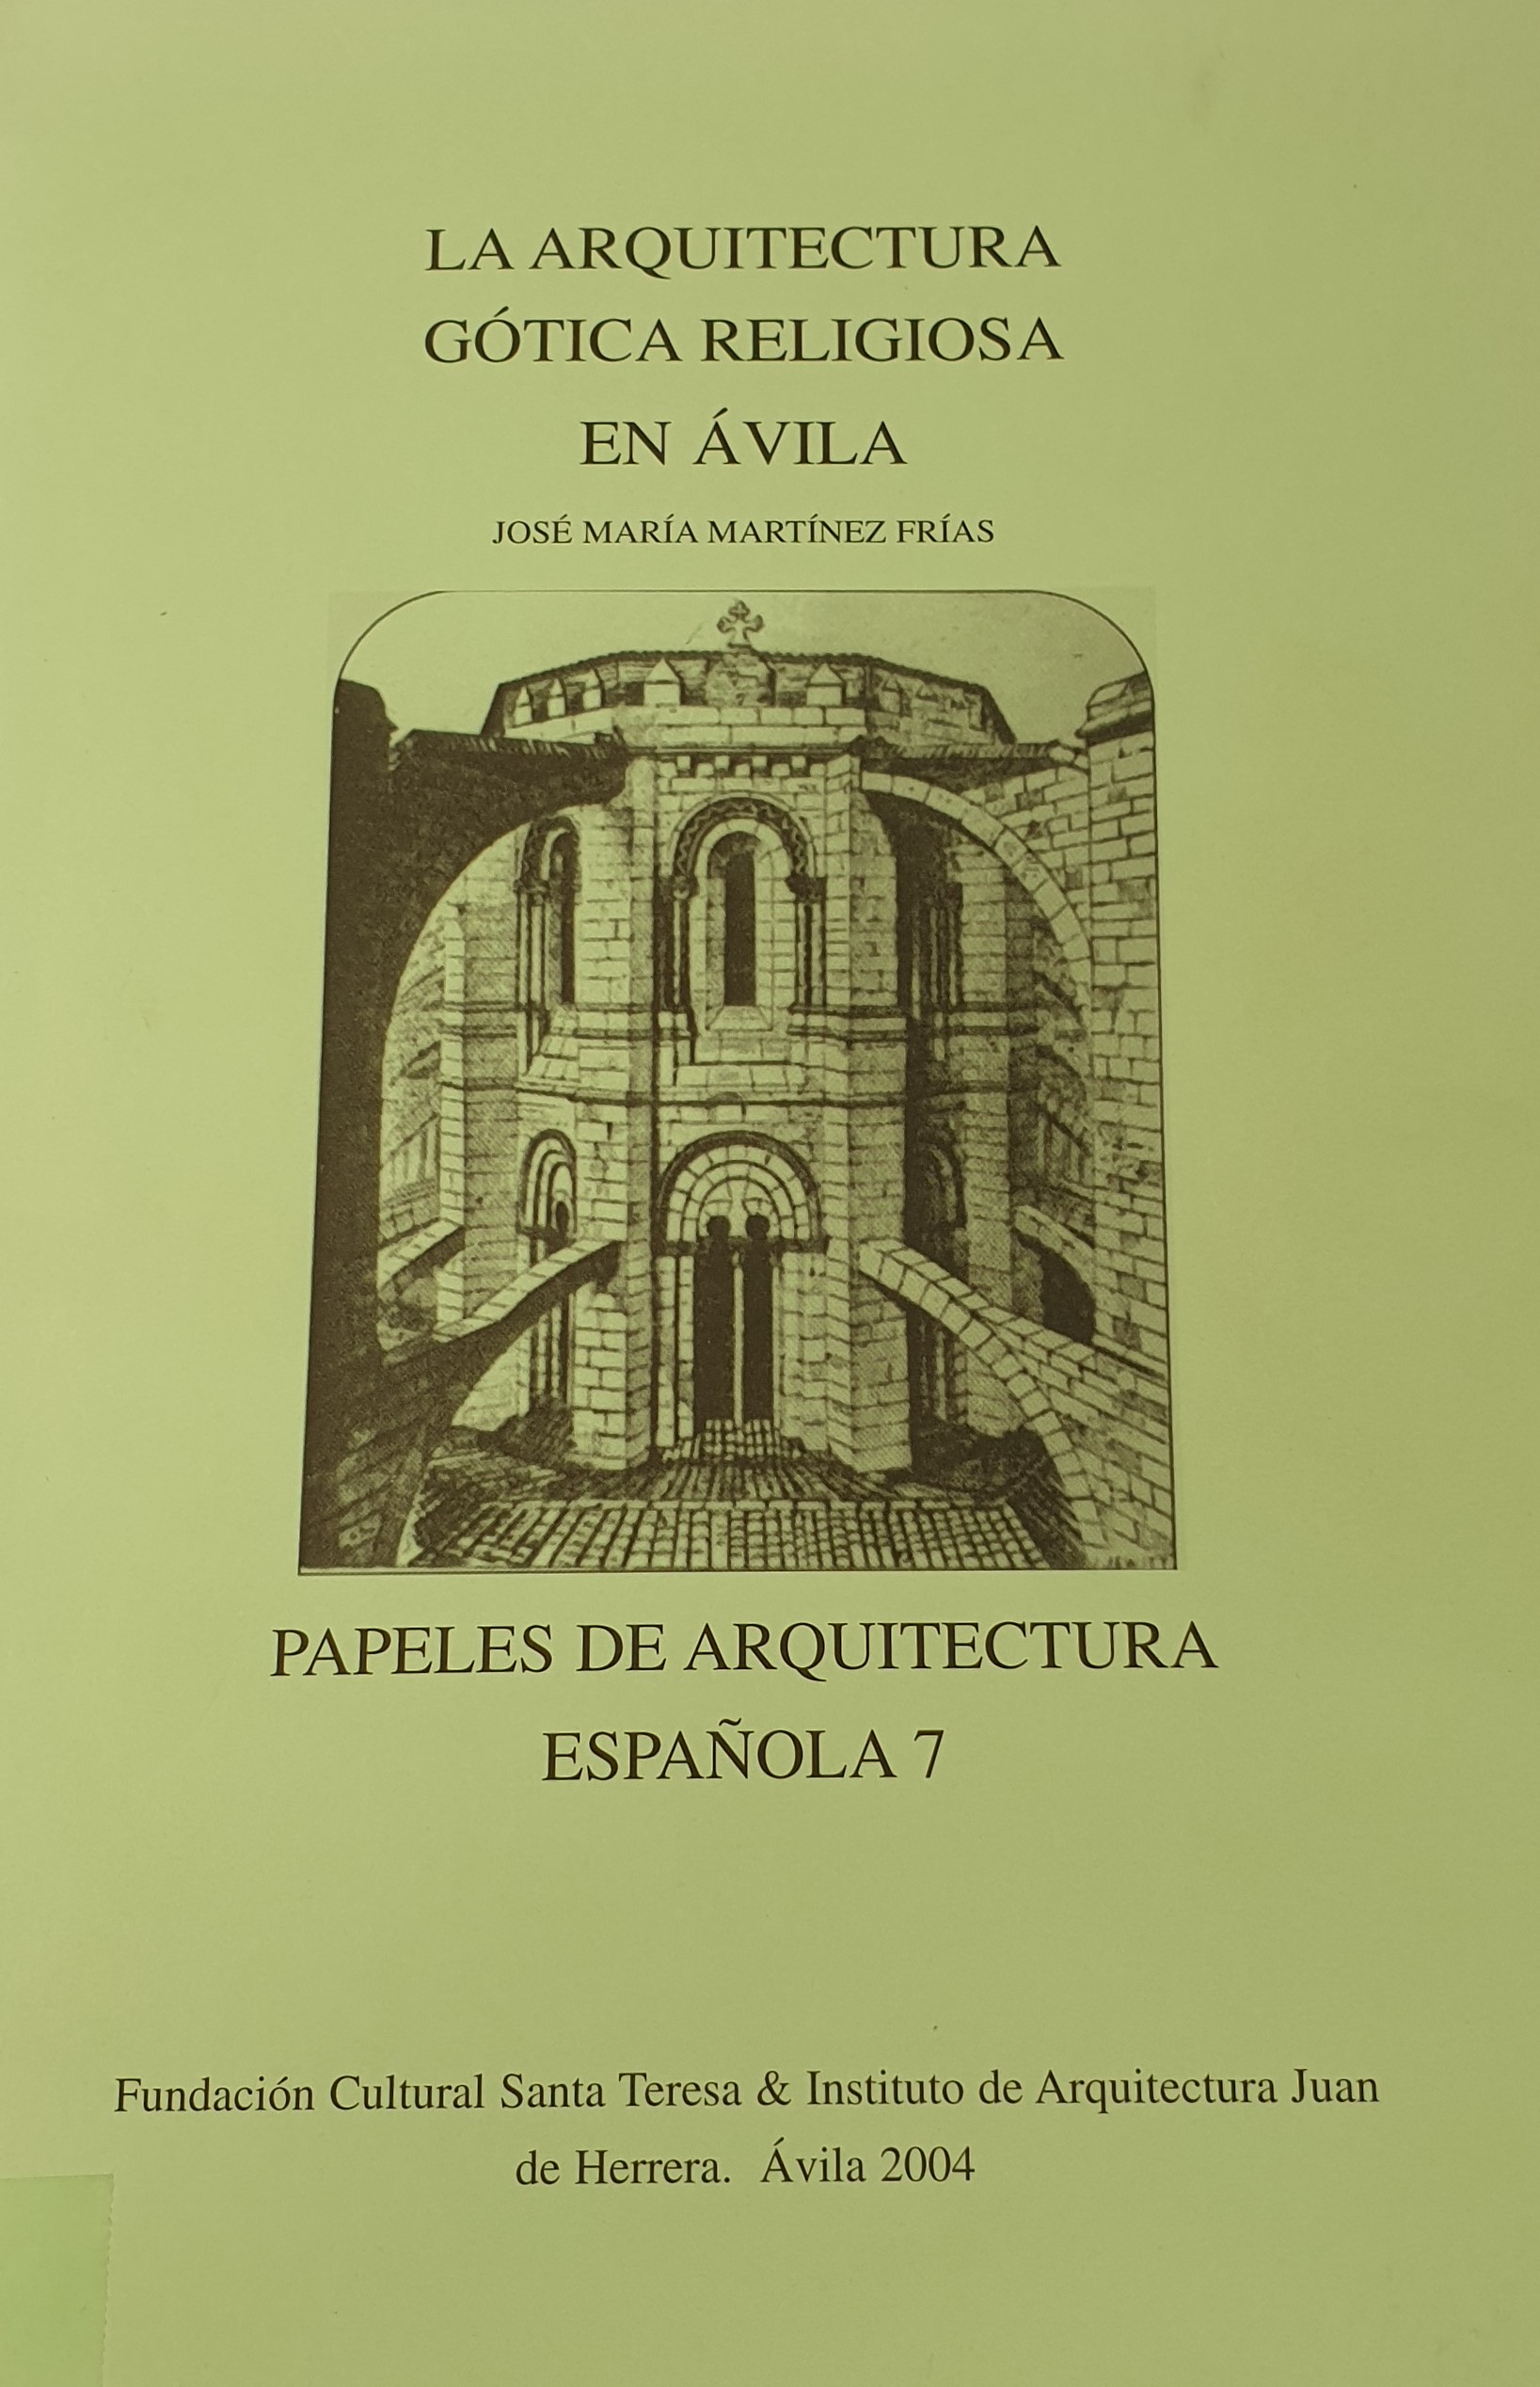 Imagen de portada del libro La arquitectura gótica religiosa en Ávila